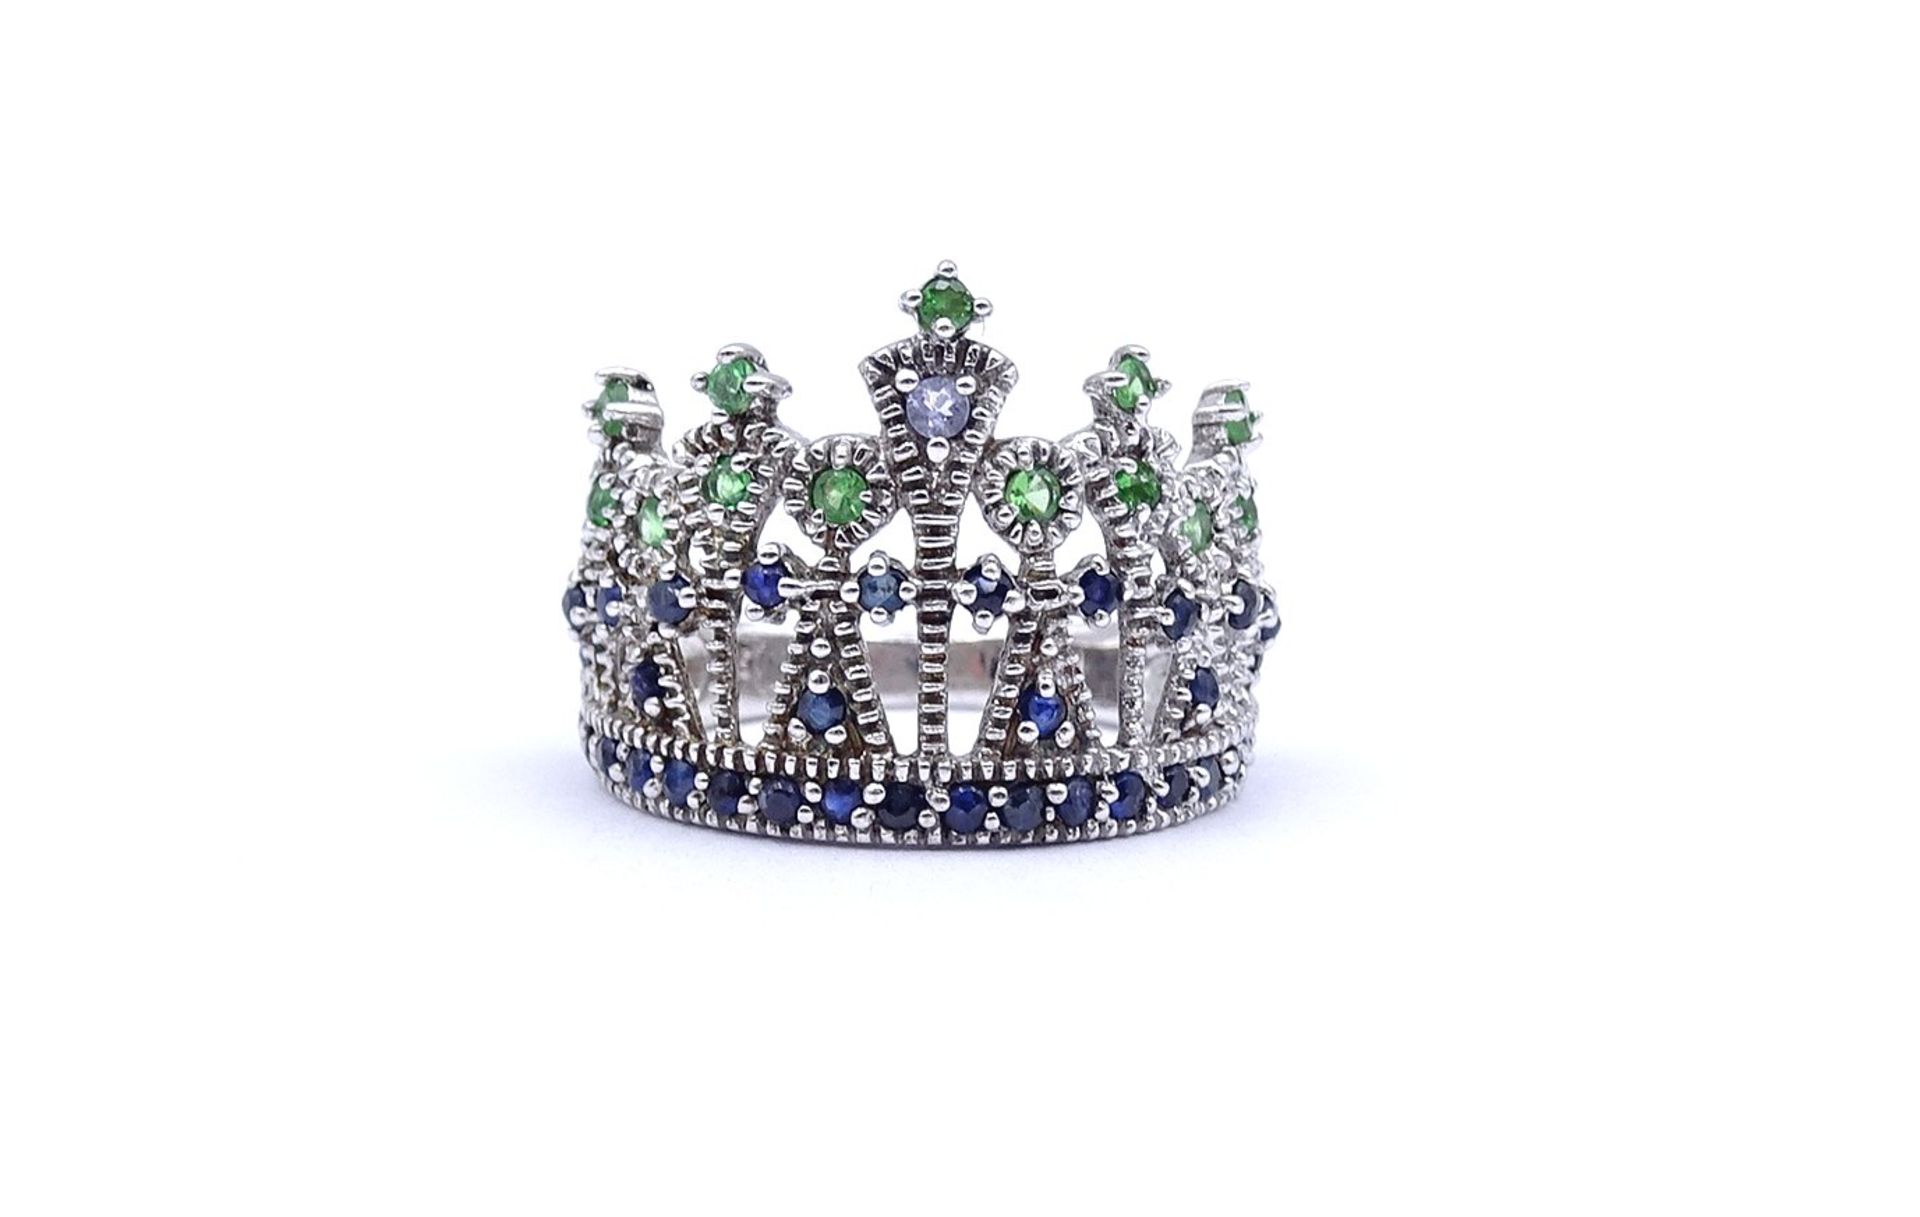 Silberring in Form einer Krone, mit Farbsteinen, 4,8g., RG 58